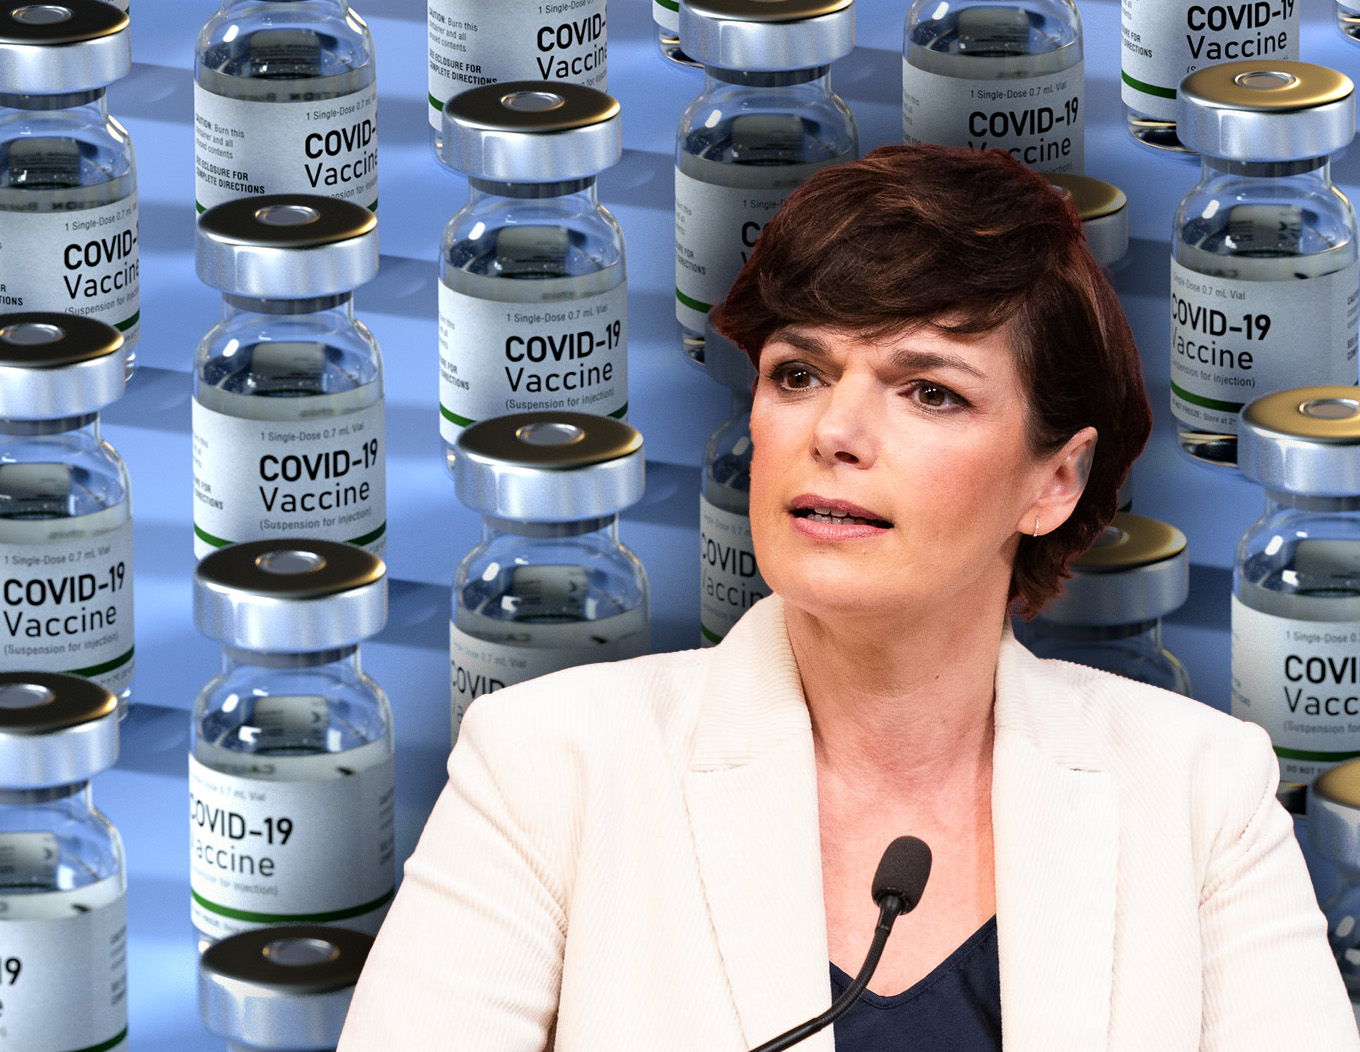 SPÖ verlangt Notfall-Lizenzen, damit mehr Firmen Impfstoff produzieren können